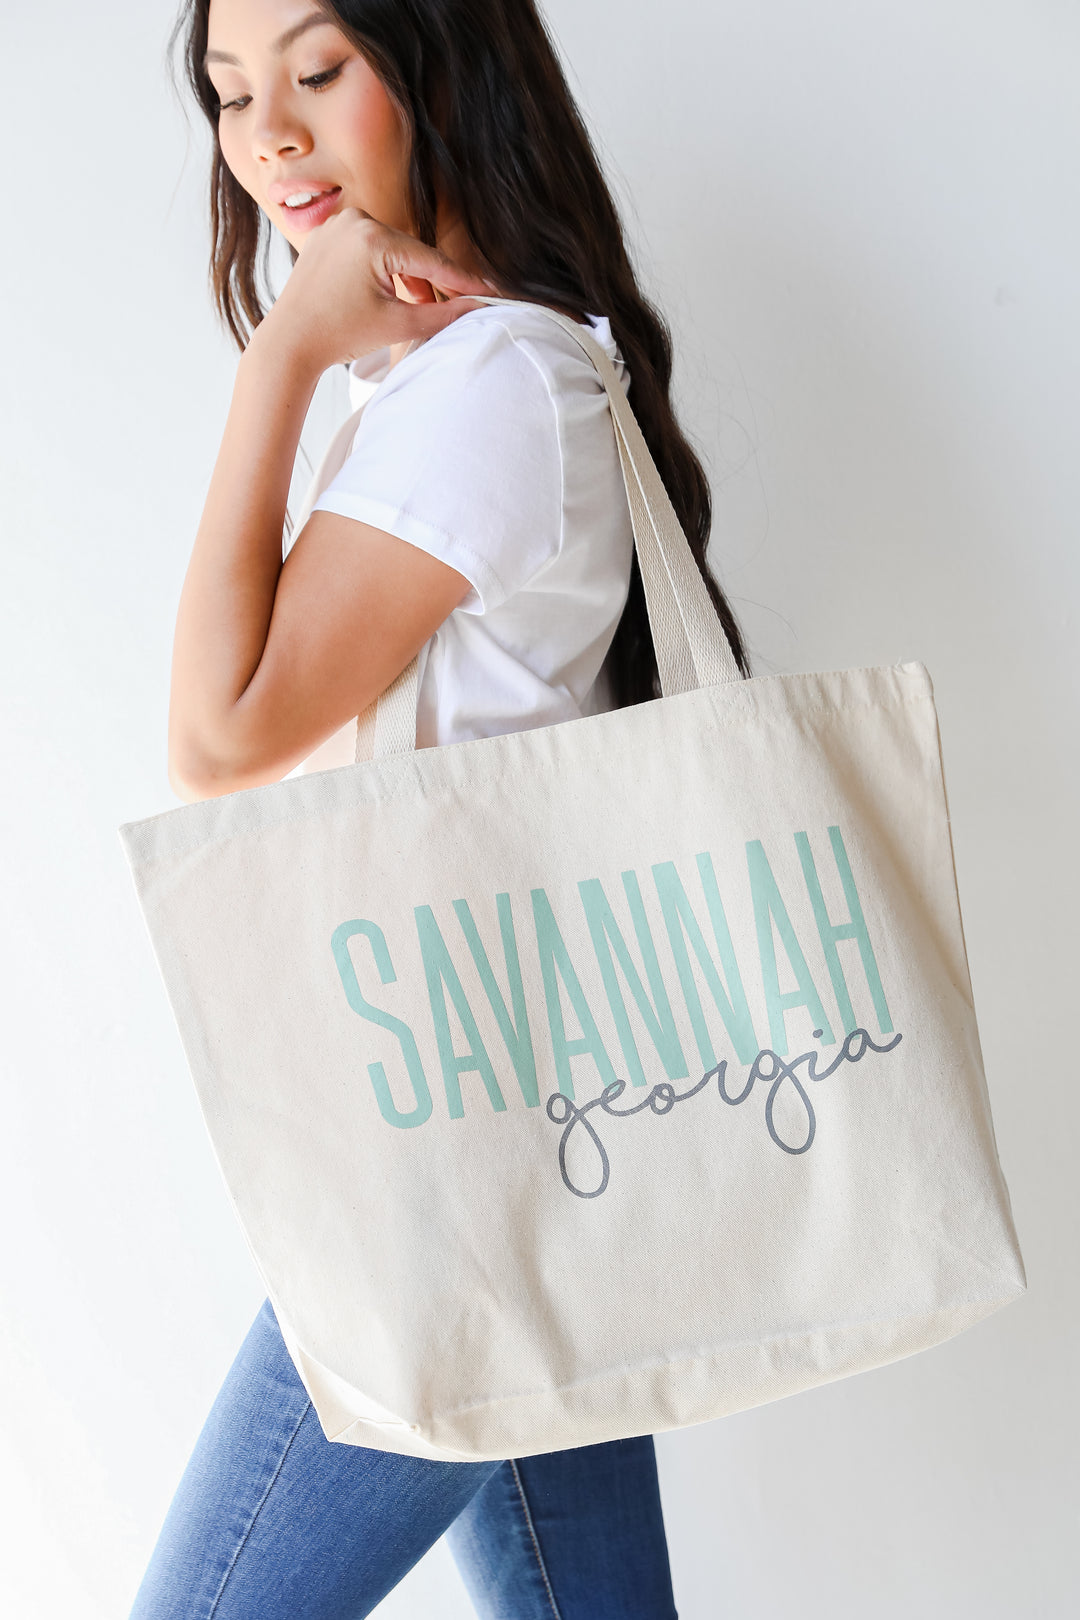 Savannah Georgia Script Large Tote Bag